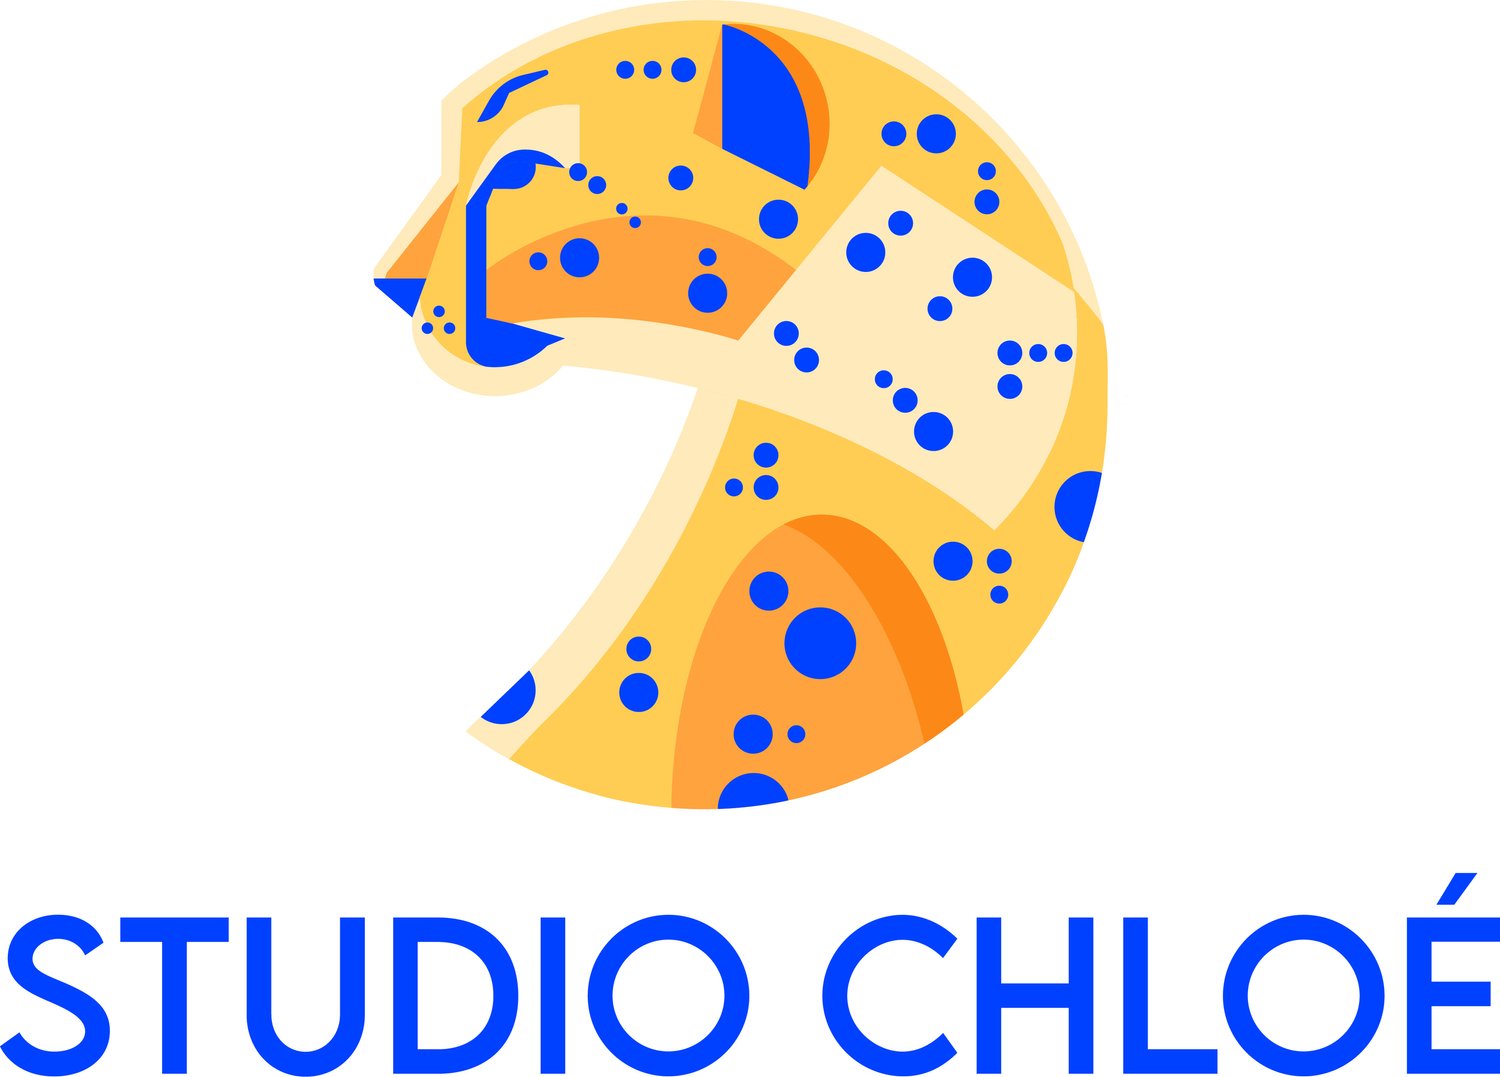 chloe designer logo